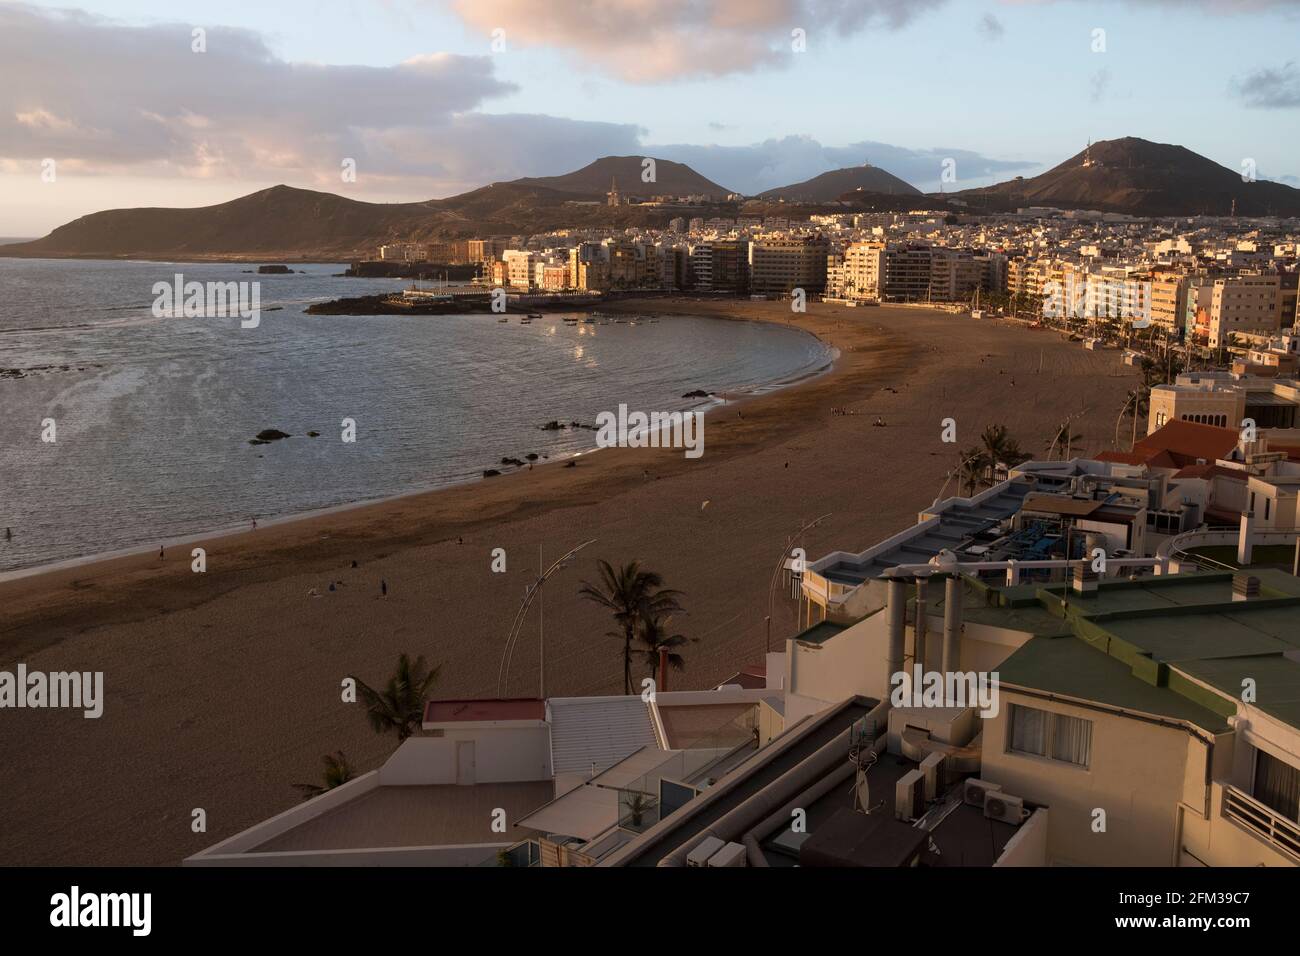 Gran Canaria, eine spanische Kanarische Insel vor der Nordwestküste von Afrika. Las Palmas de Gran Canaria mit Strand Las Canteras. Foto Stock